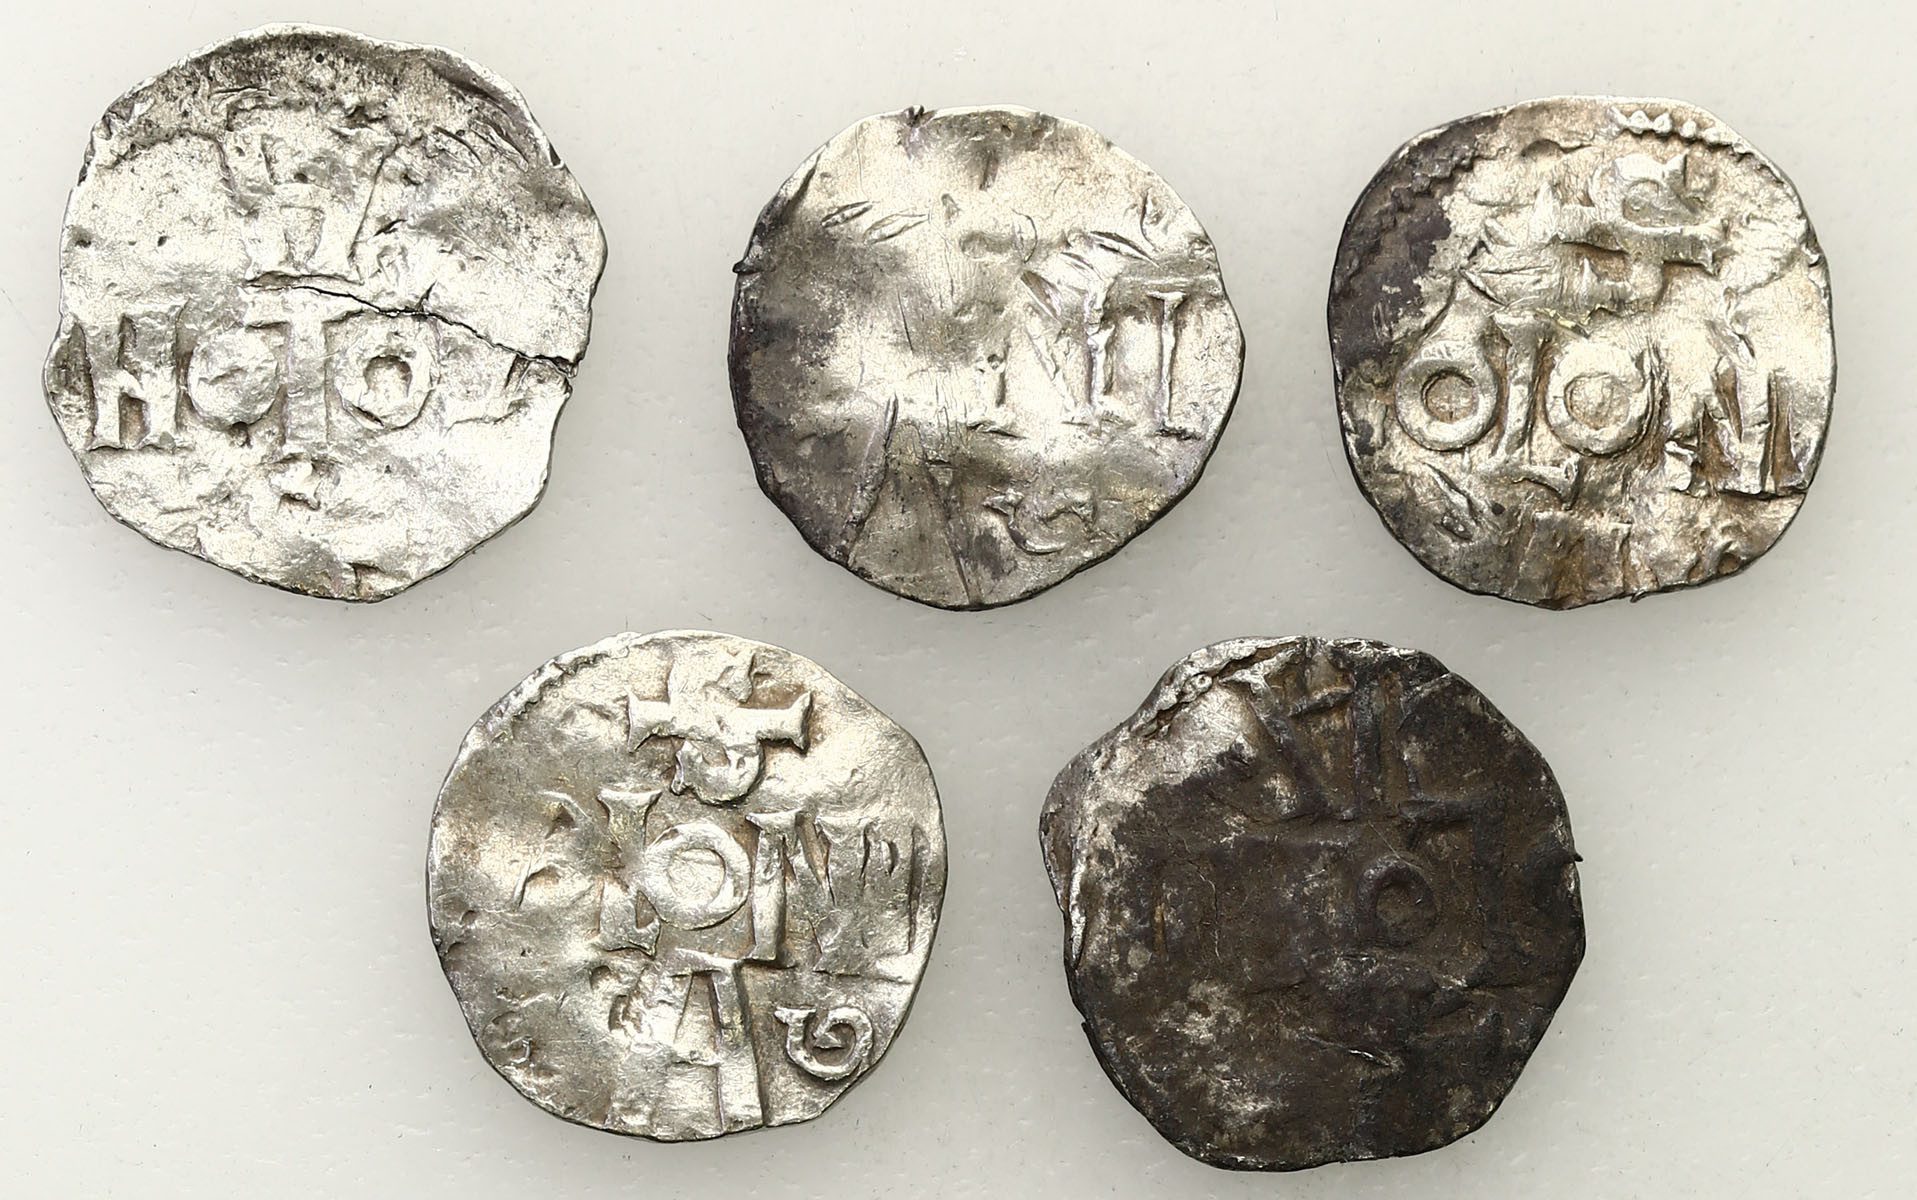 Niemcy, Dolna Lotaryngia - Kolonia, X/XI wiek. Denar typu kolońskiego i ich naśladownictwa, zestaw 5 monet